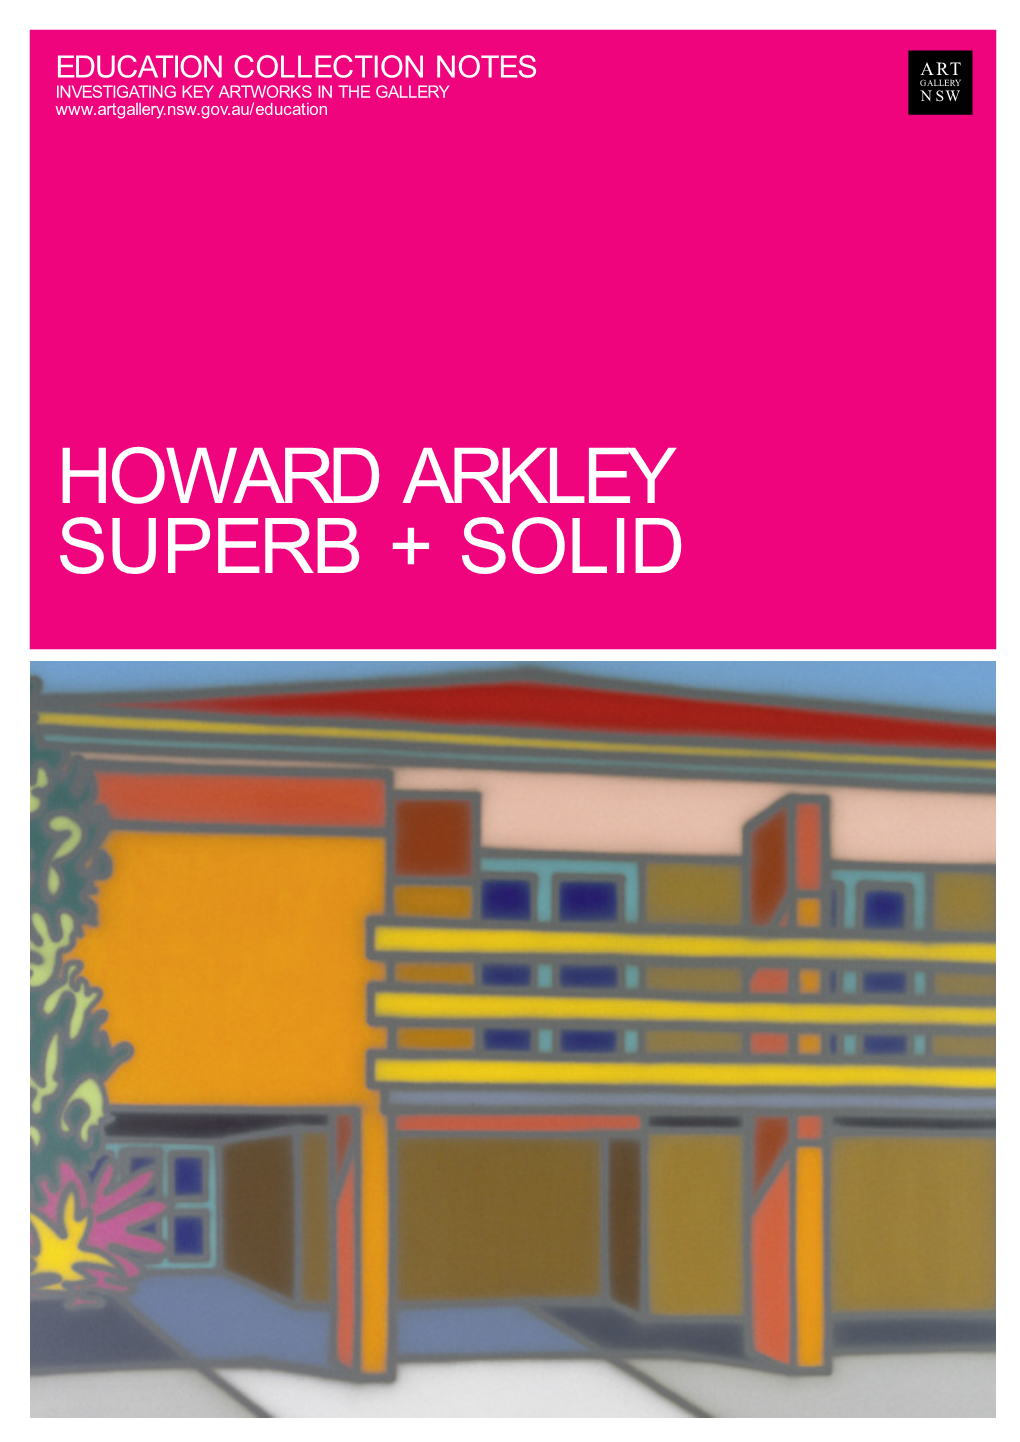 Howard Arkley Superb + Solid